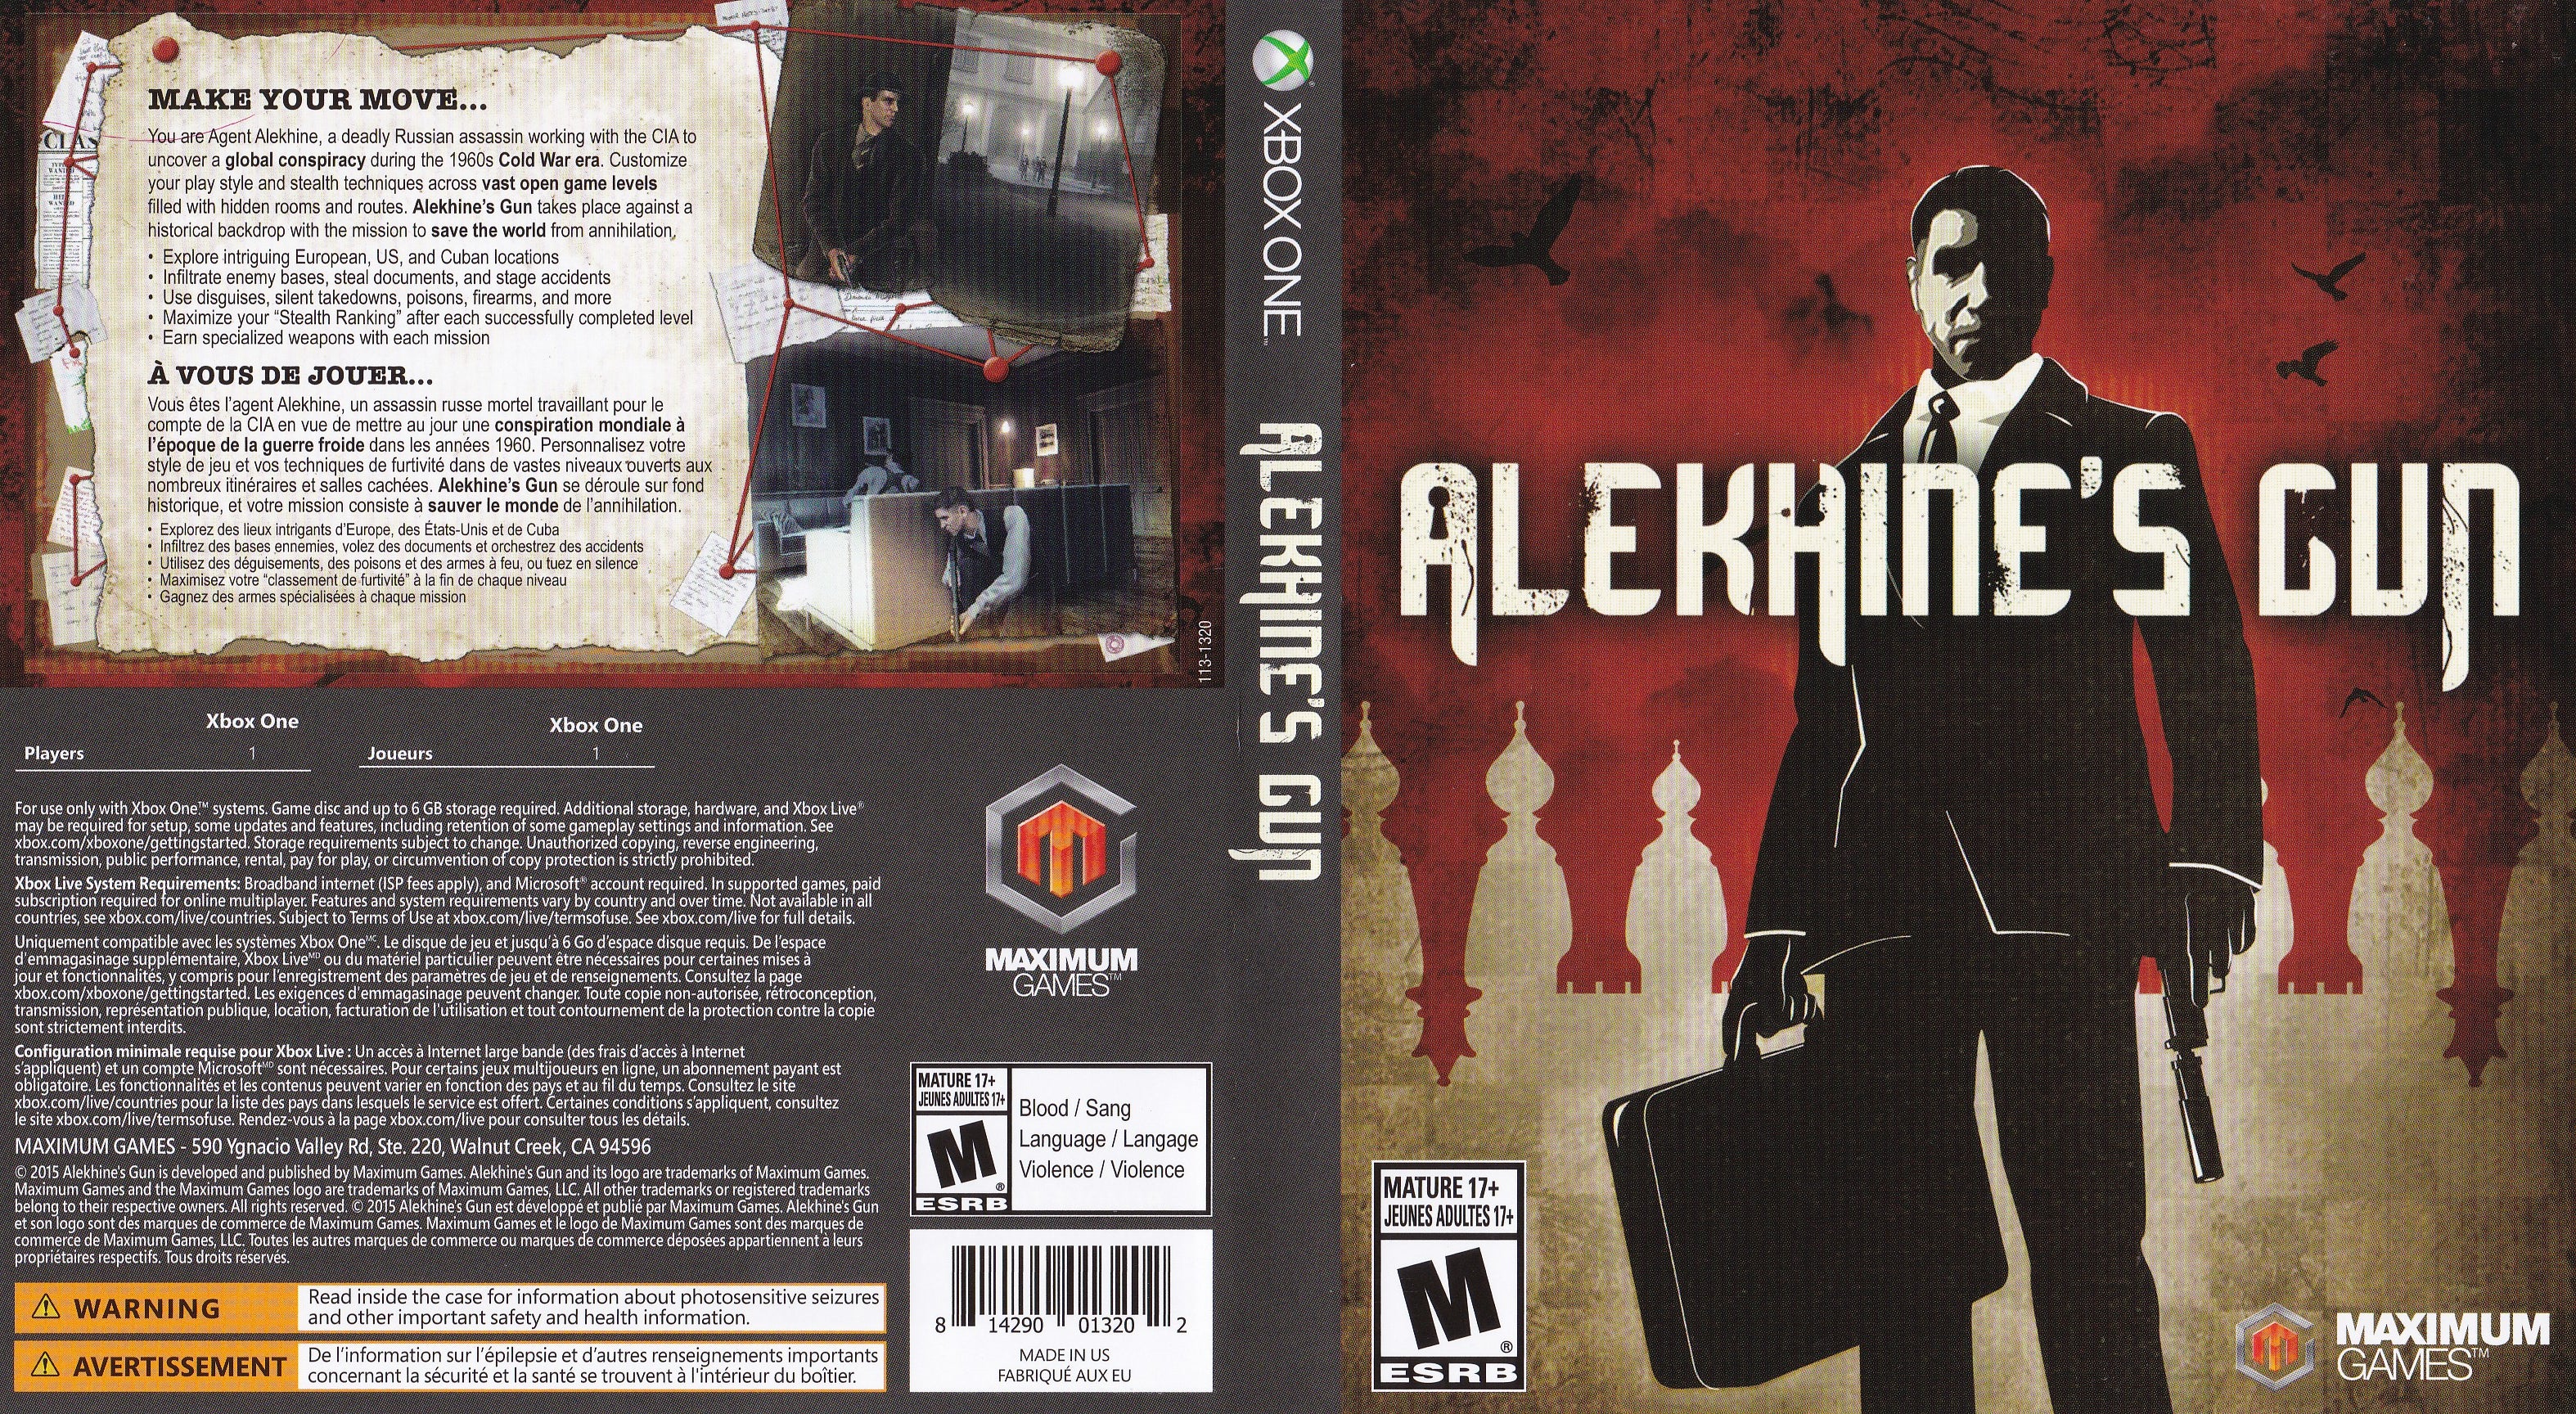 Alekhine's Gun